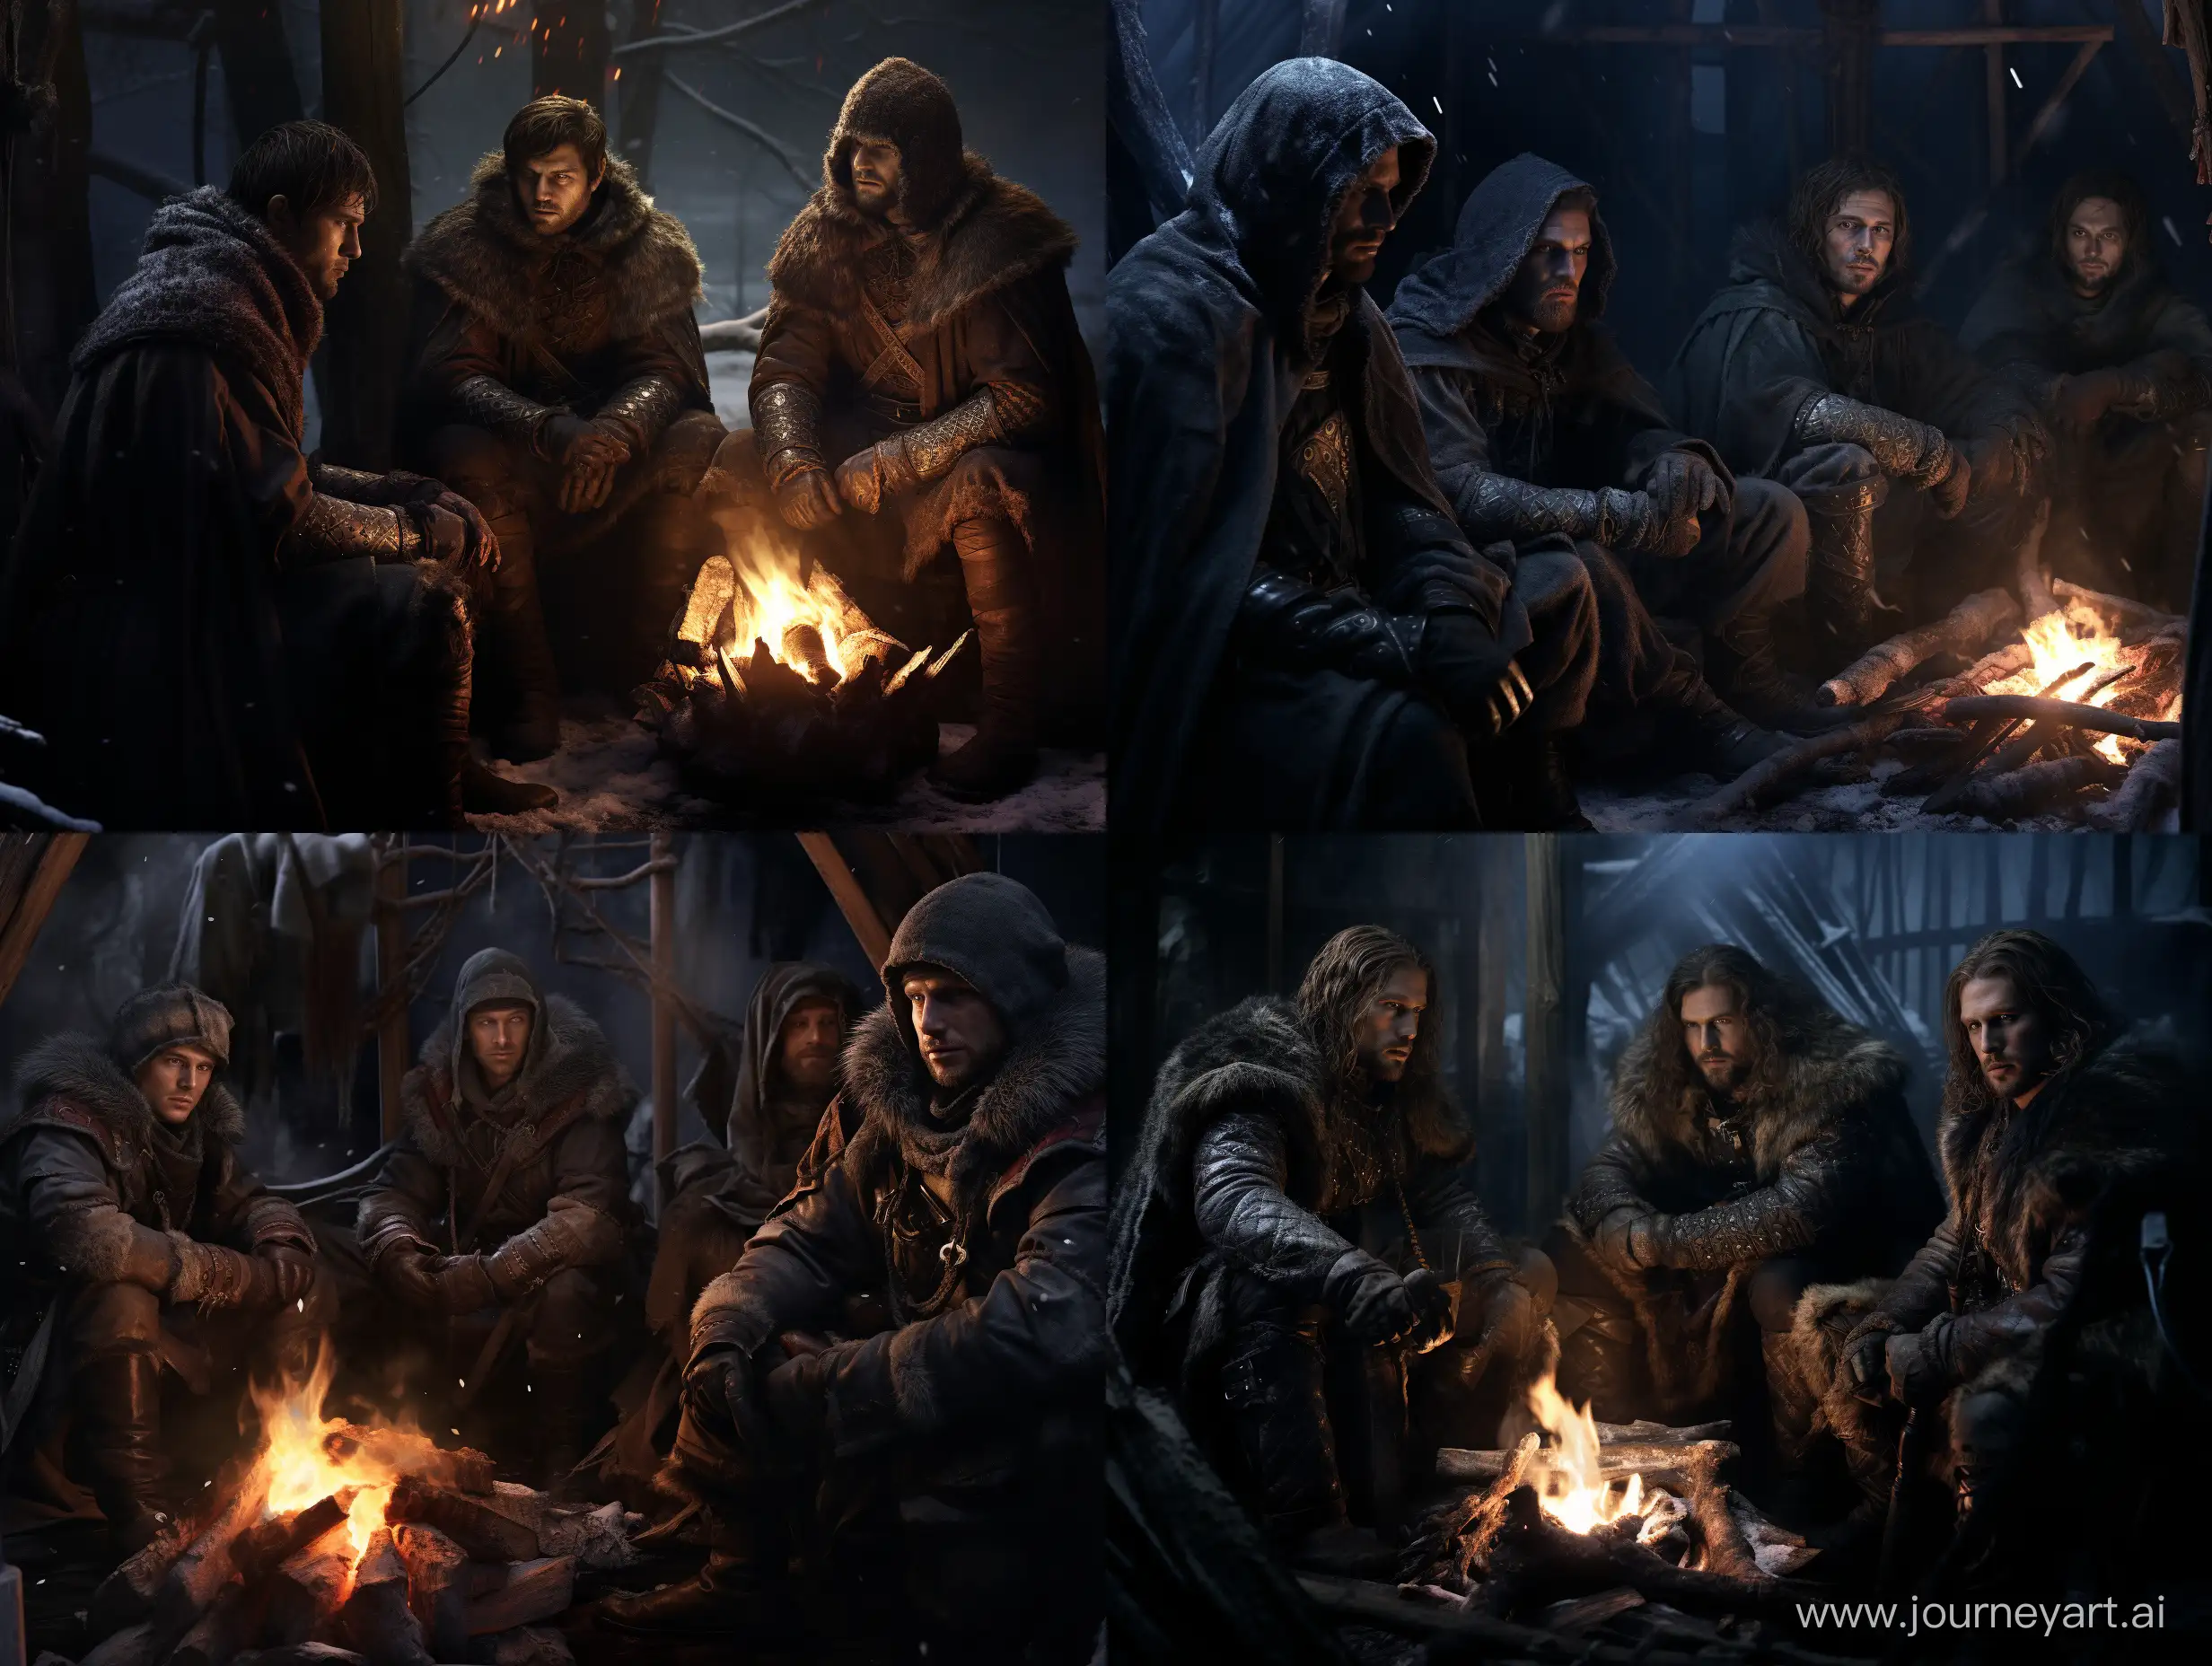 уставшие 4 (четыре) мужчины охотника, сидят у костра, в закрытой палатке, в средневековой зимней одежде, смотрят в сторону смотрящего, стиль тёмного фентези